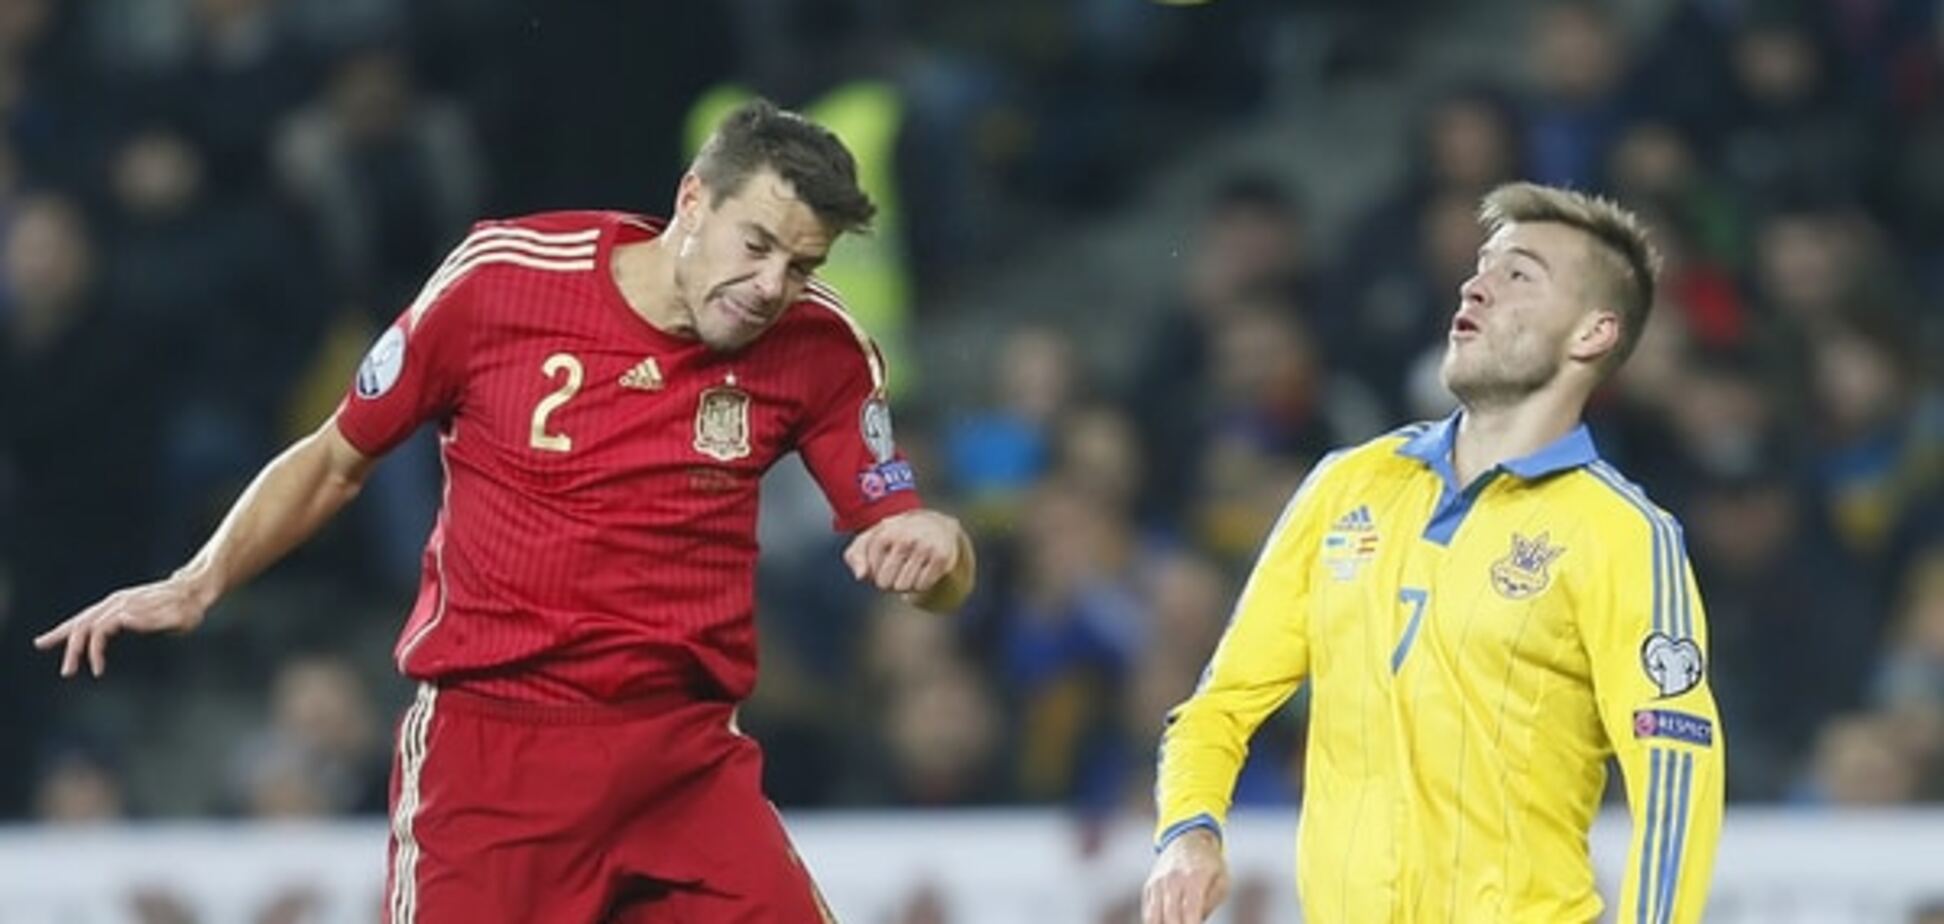 'Треба було грати погано'. Ярмоленко пояснив поразку України від Іспанії